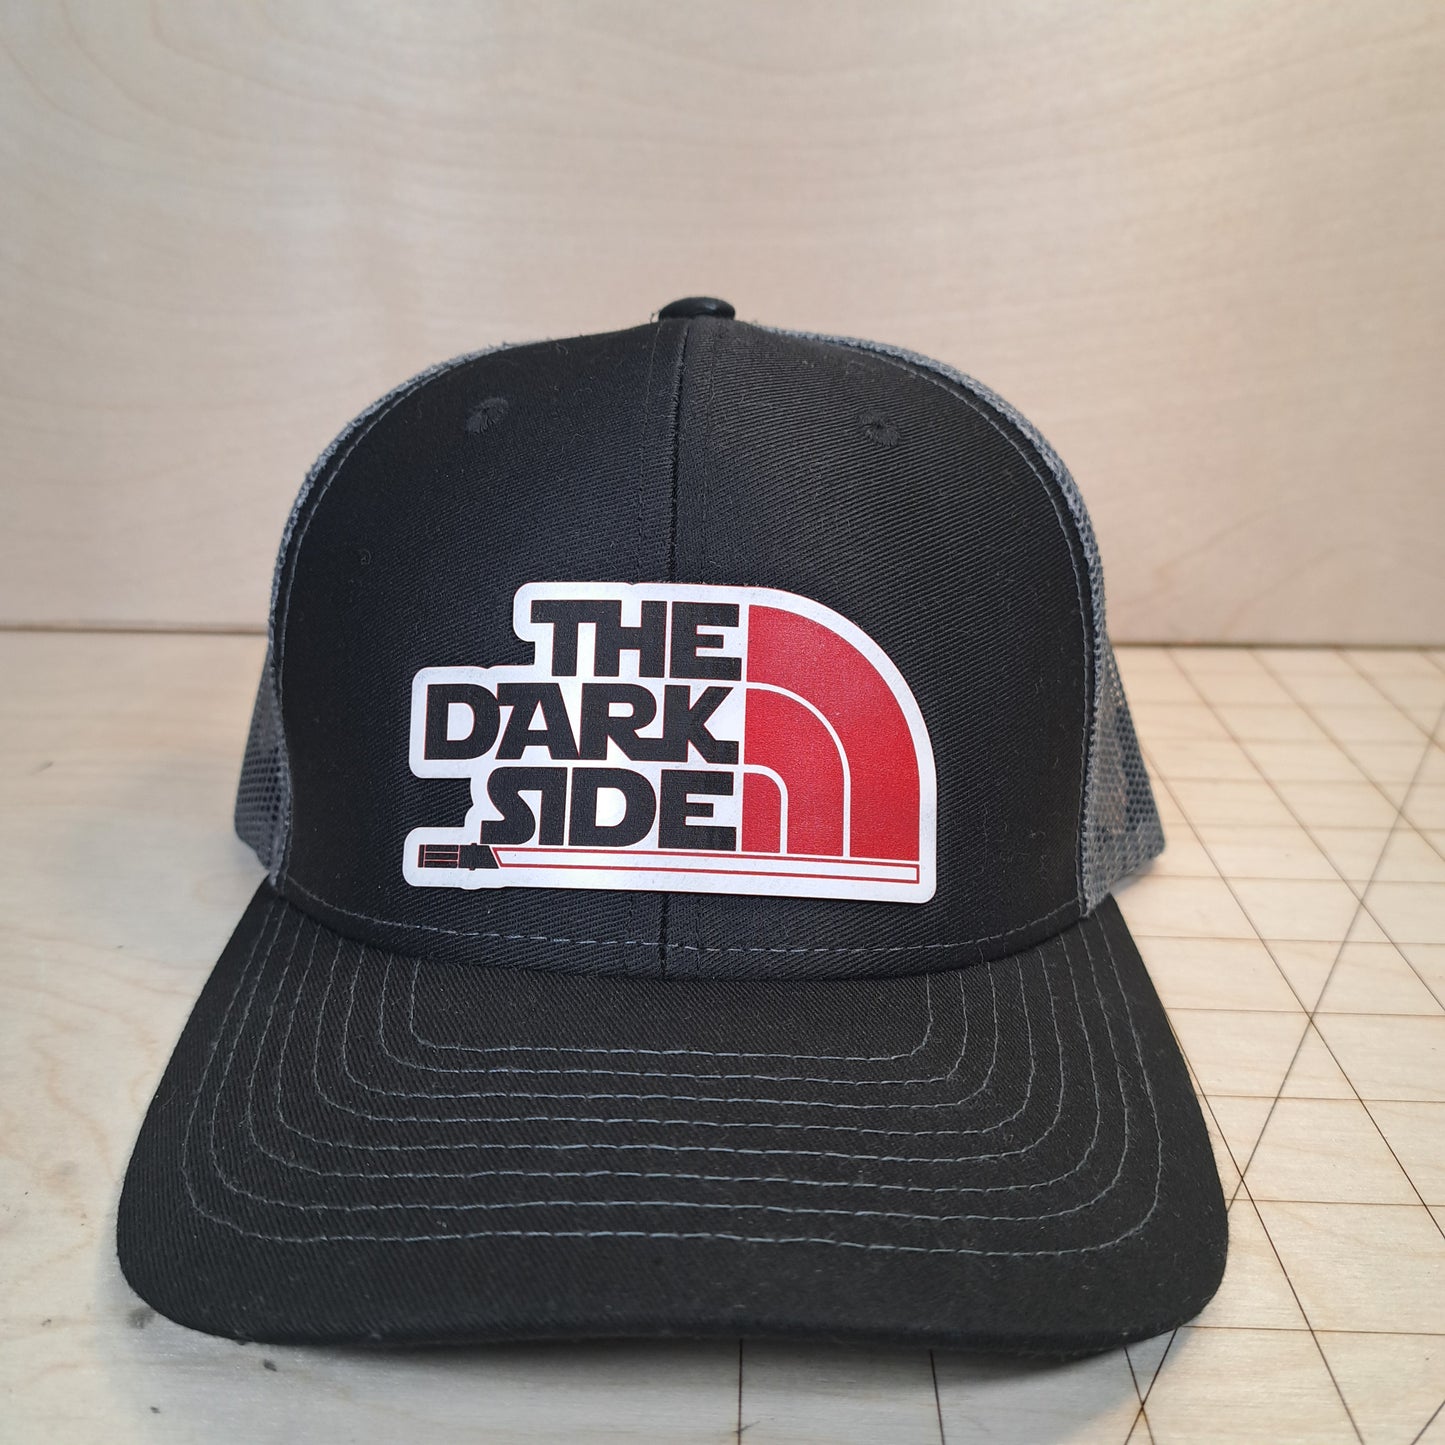 Dark side hat